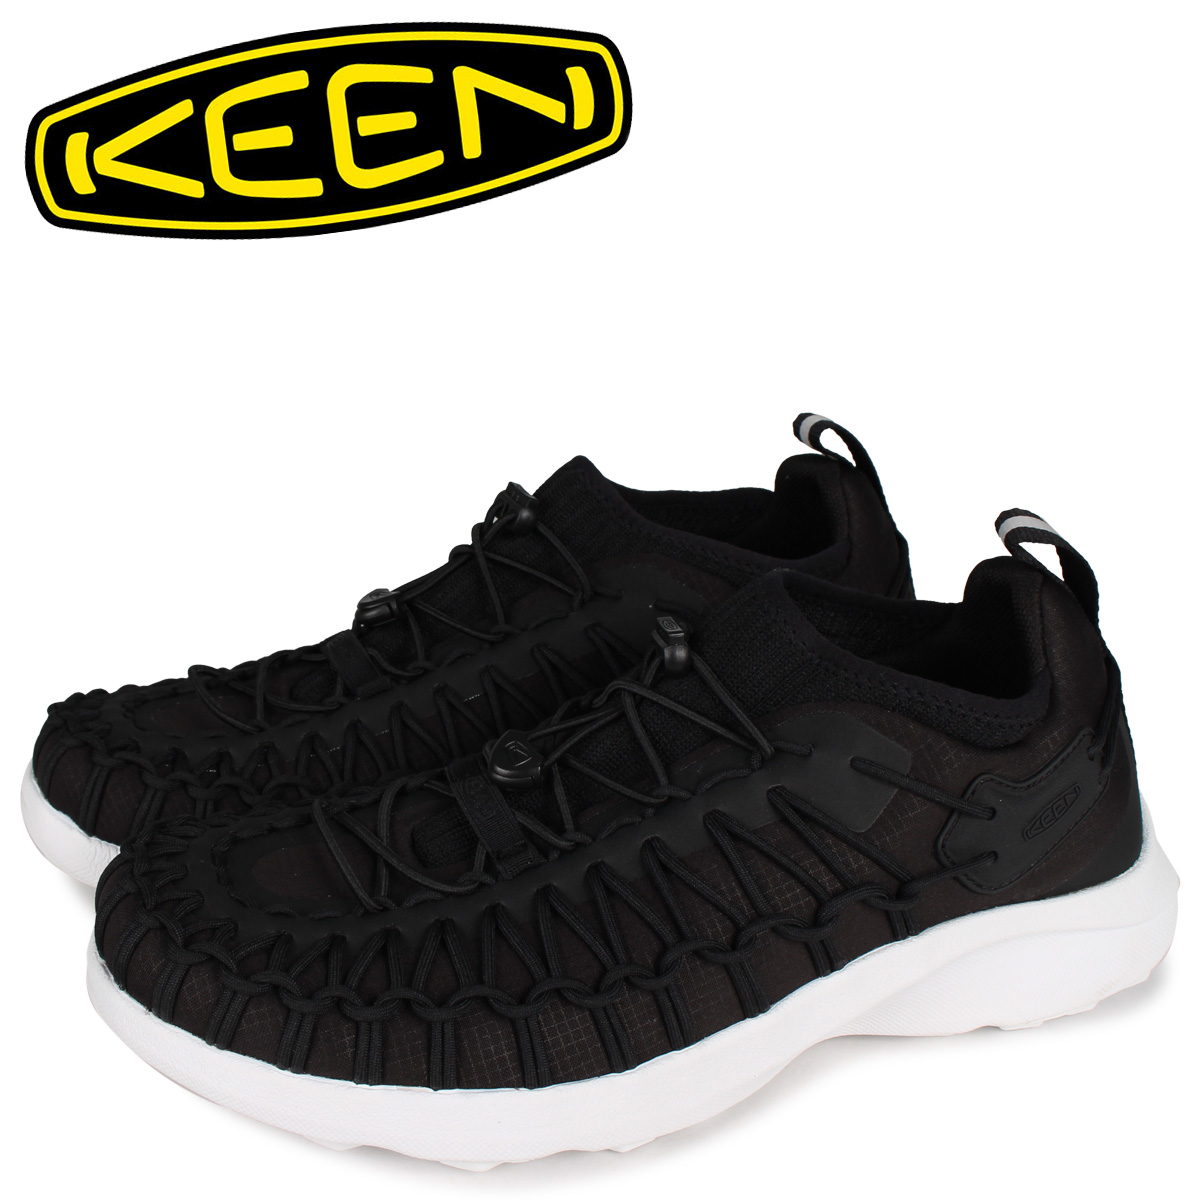 想像を超えての 最大600円offクーポン Keen キーン ユニーク スニーク スニーカー メンズ Uneek Sneak Sneaker ブラック 黒 限定製作 Www Eduka Rs